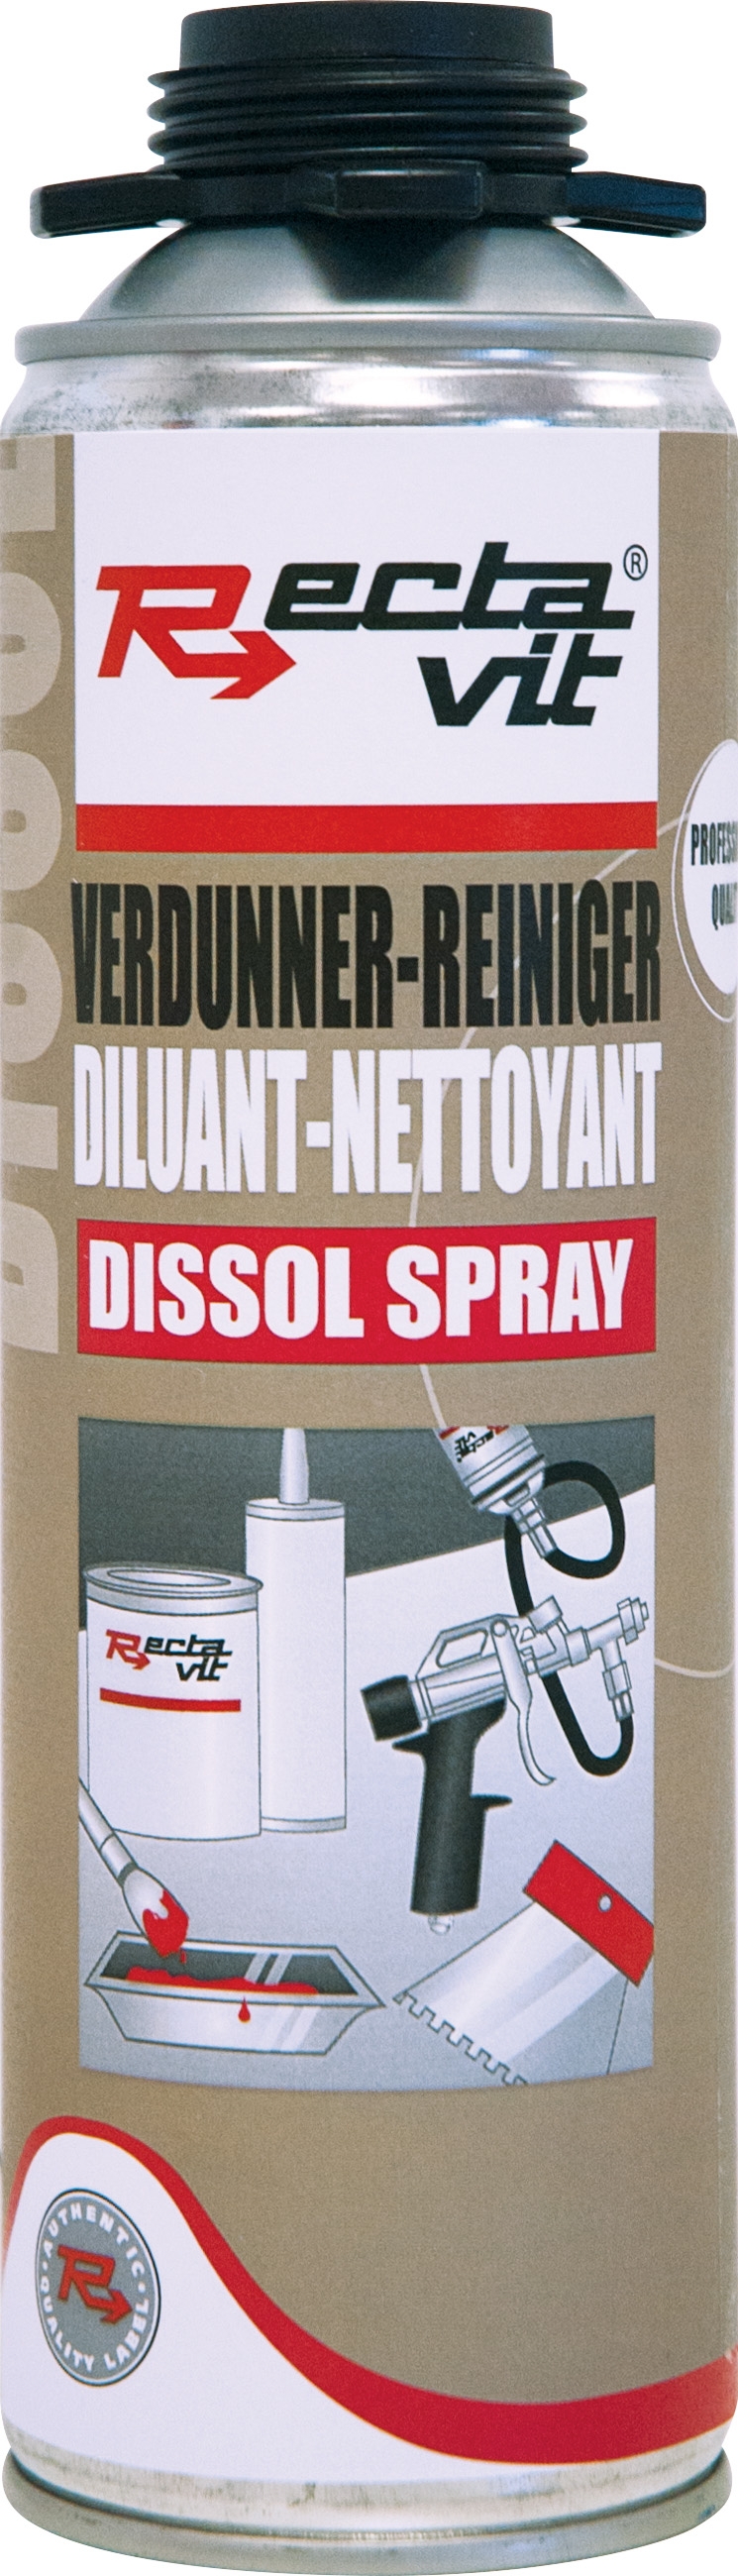 Rectavit Dissol spray 0.5ltr